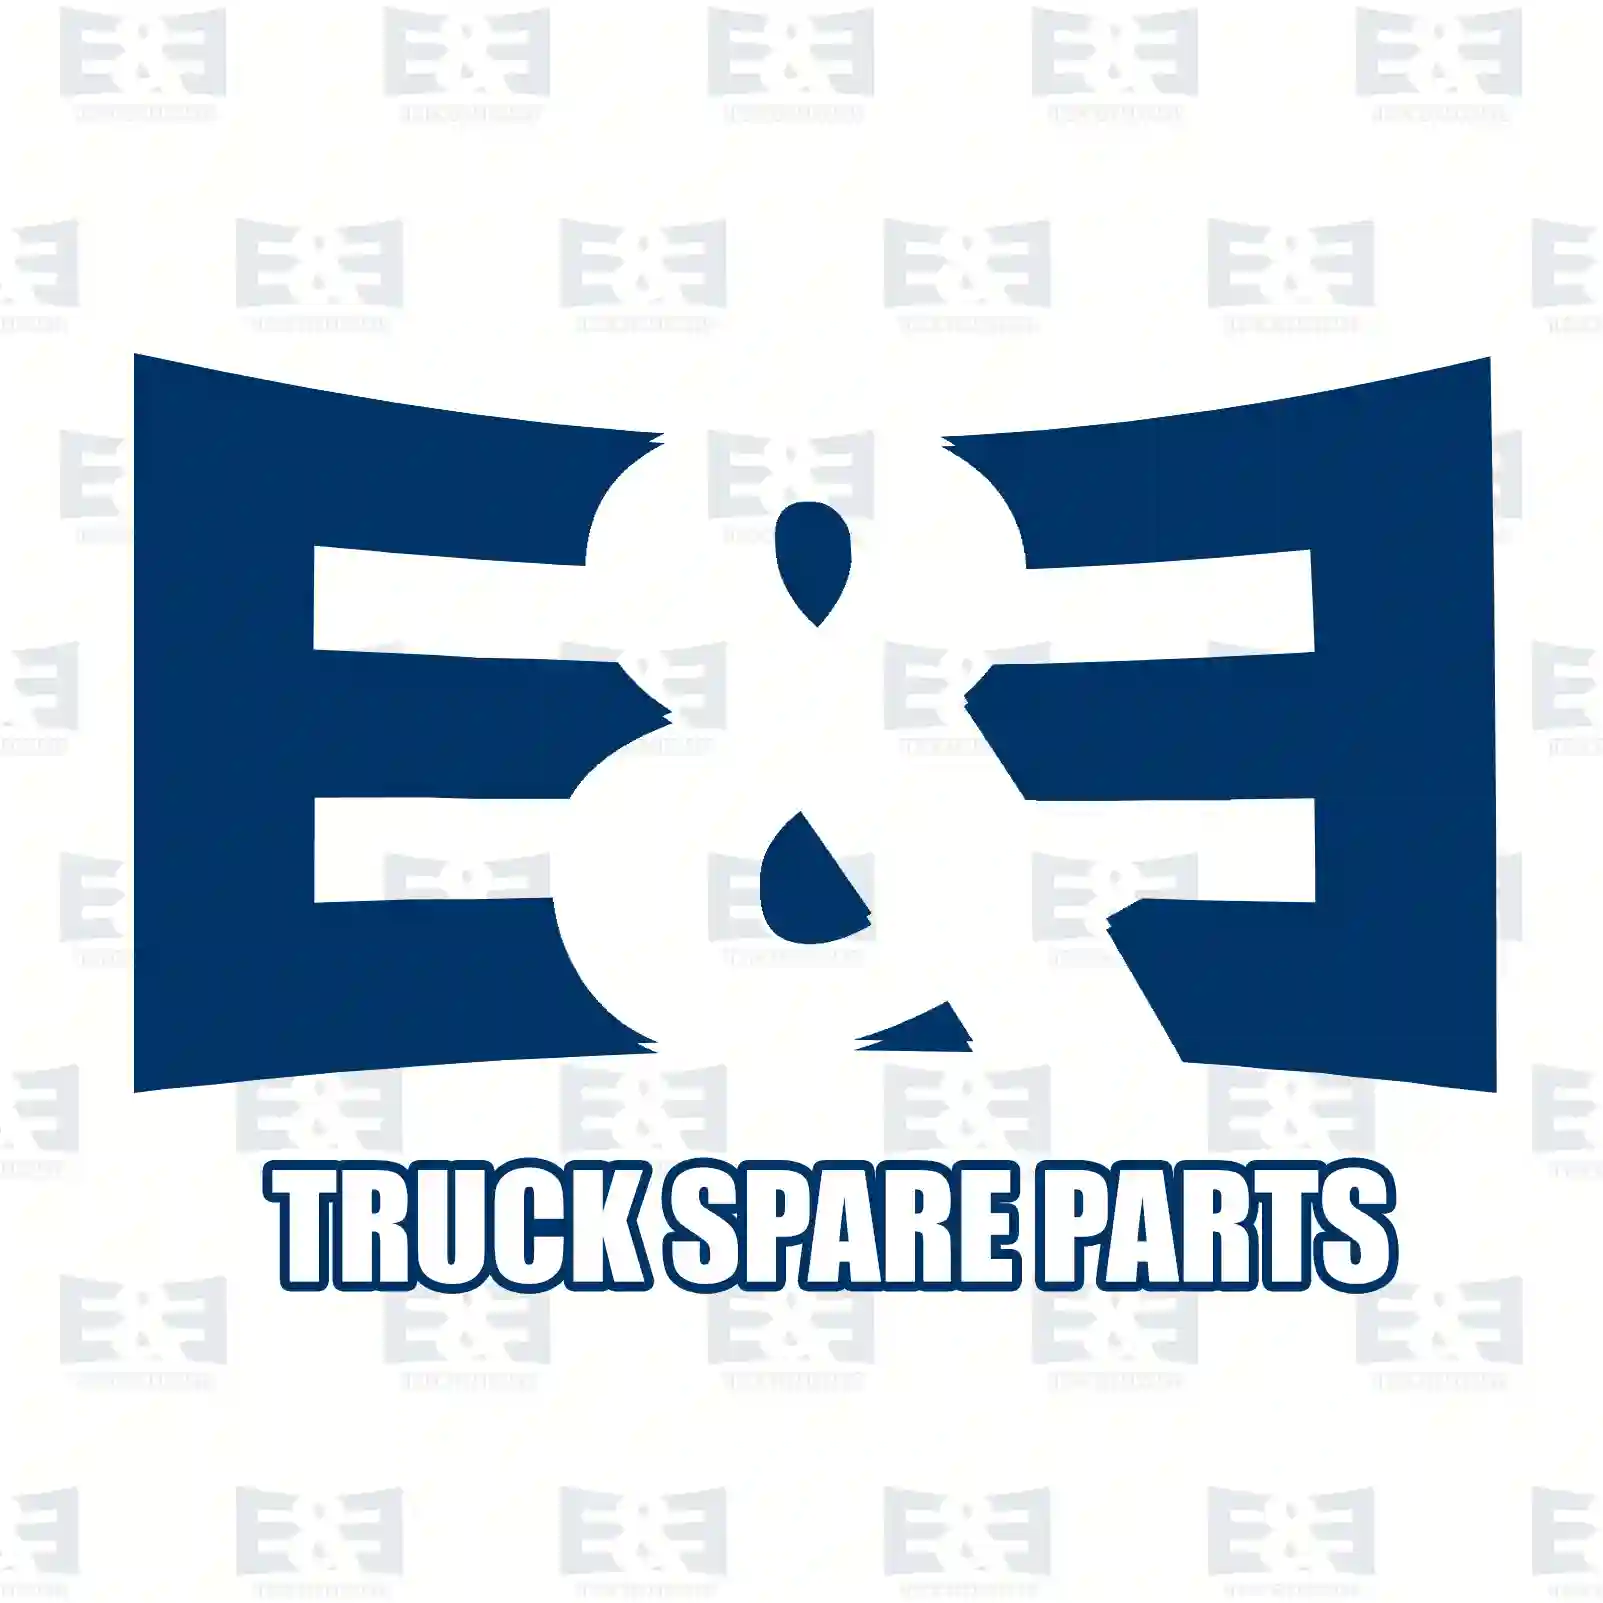 Unit injector, 2E2286924, 10574392, 1440577, 1574392, 574392 ||  2E2286924 E&E Truck Spare Parts | Truck Spare Parts, Auotomotive Spare Parts Unit injector, 2E2286924, 10574392, 1440577, 1574392, 574392 ||  2E2286924 E&E Truck Spare Parts | Truck Spare Parts, Auotomotive Spare Parts